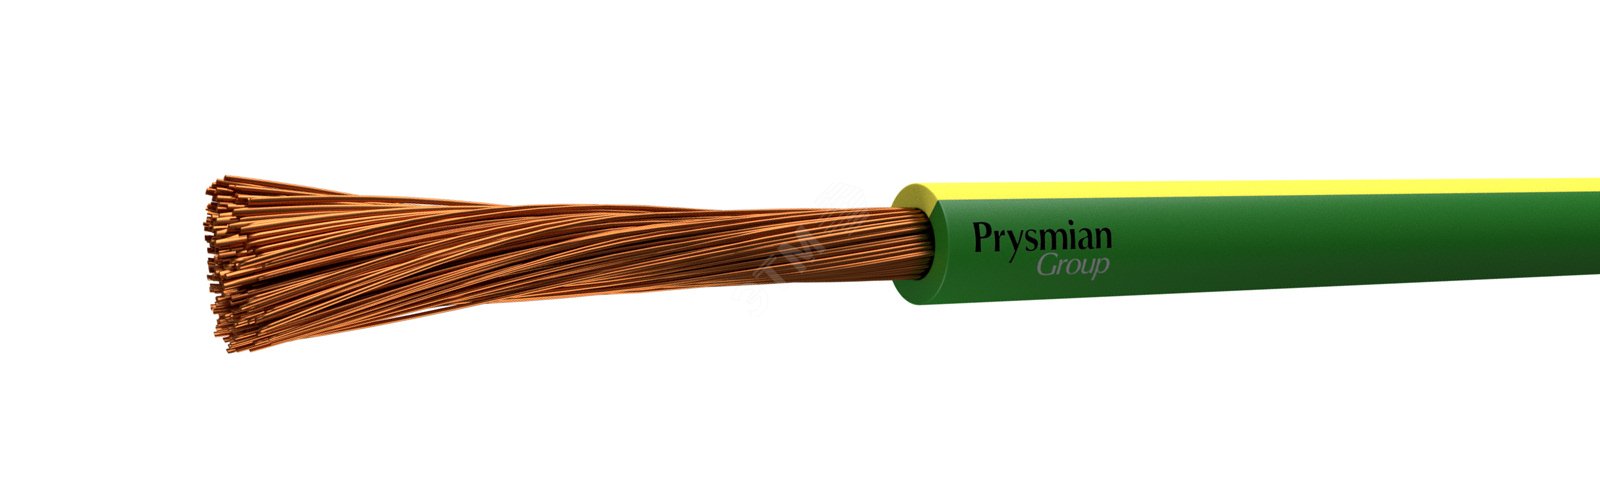 Провод ПУГВ 1х1.5 желто-зеленый многопроволочный РЭК/Prysmian